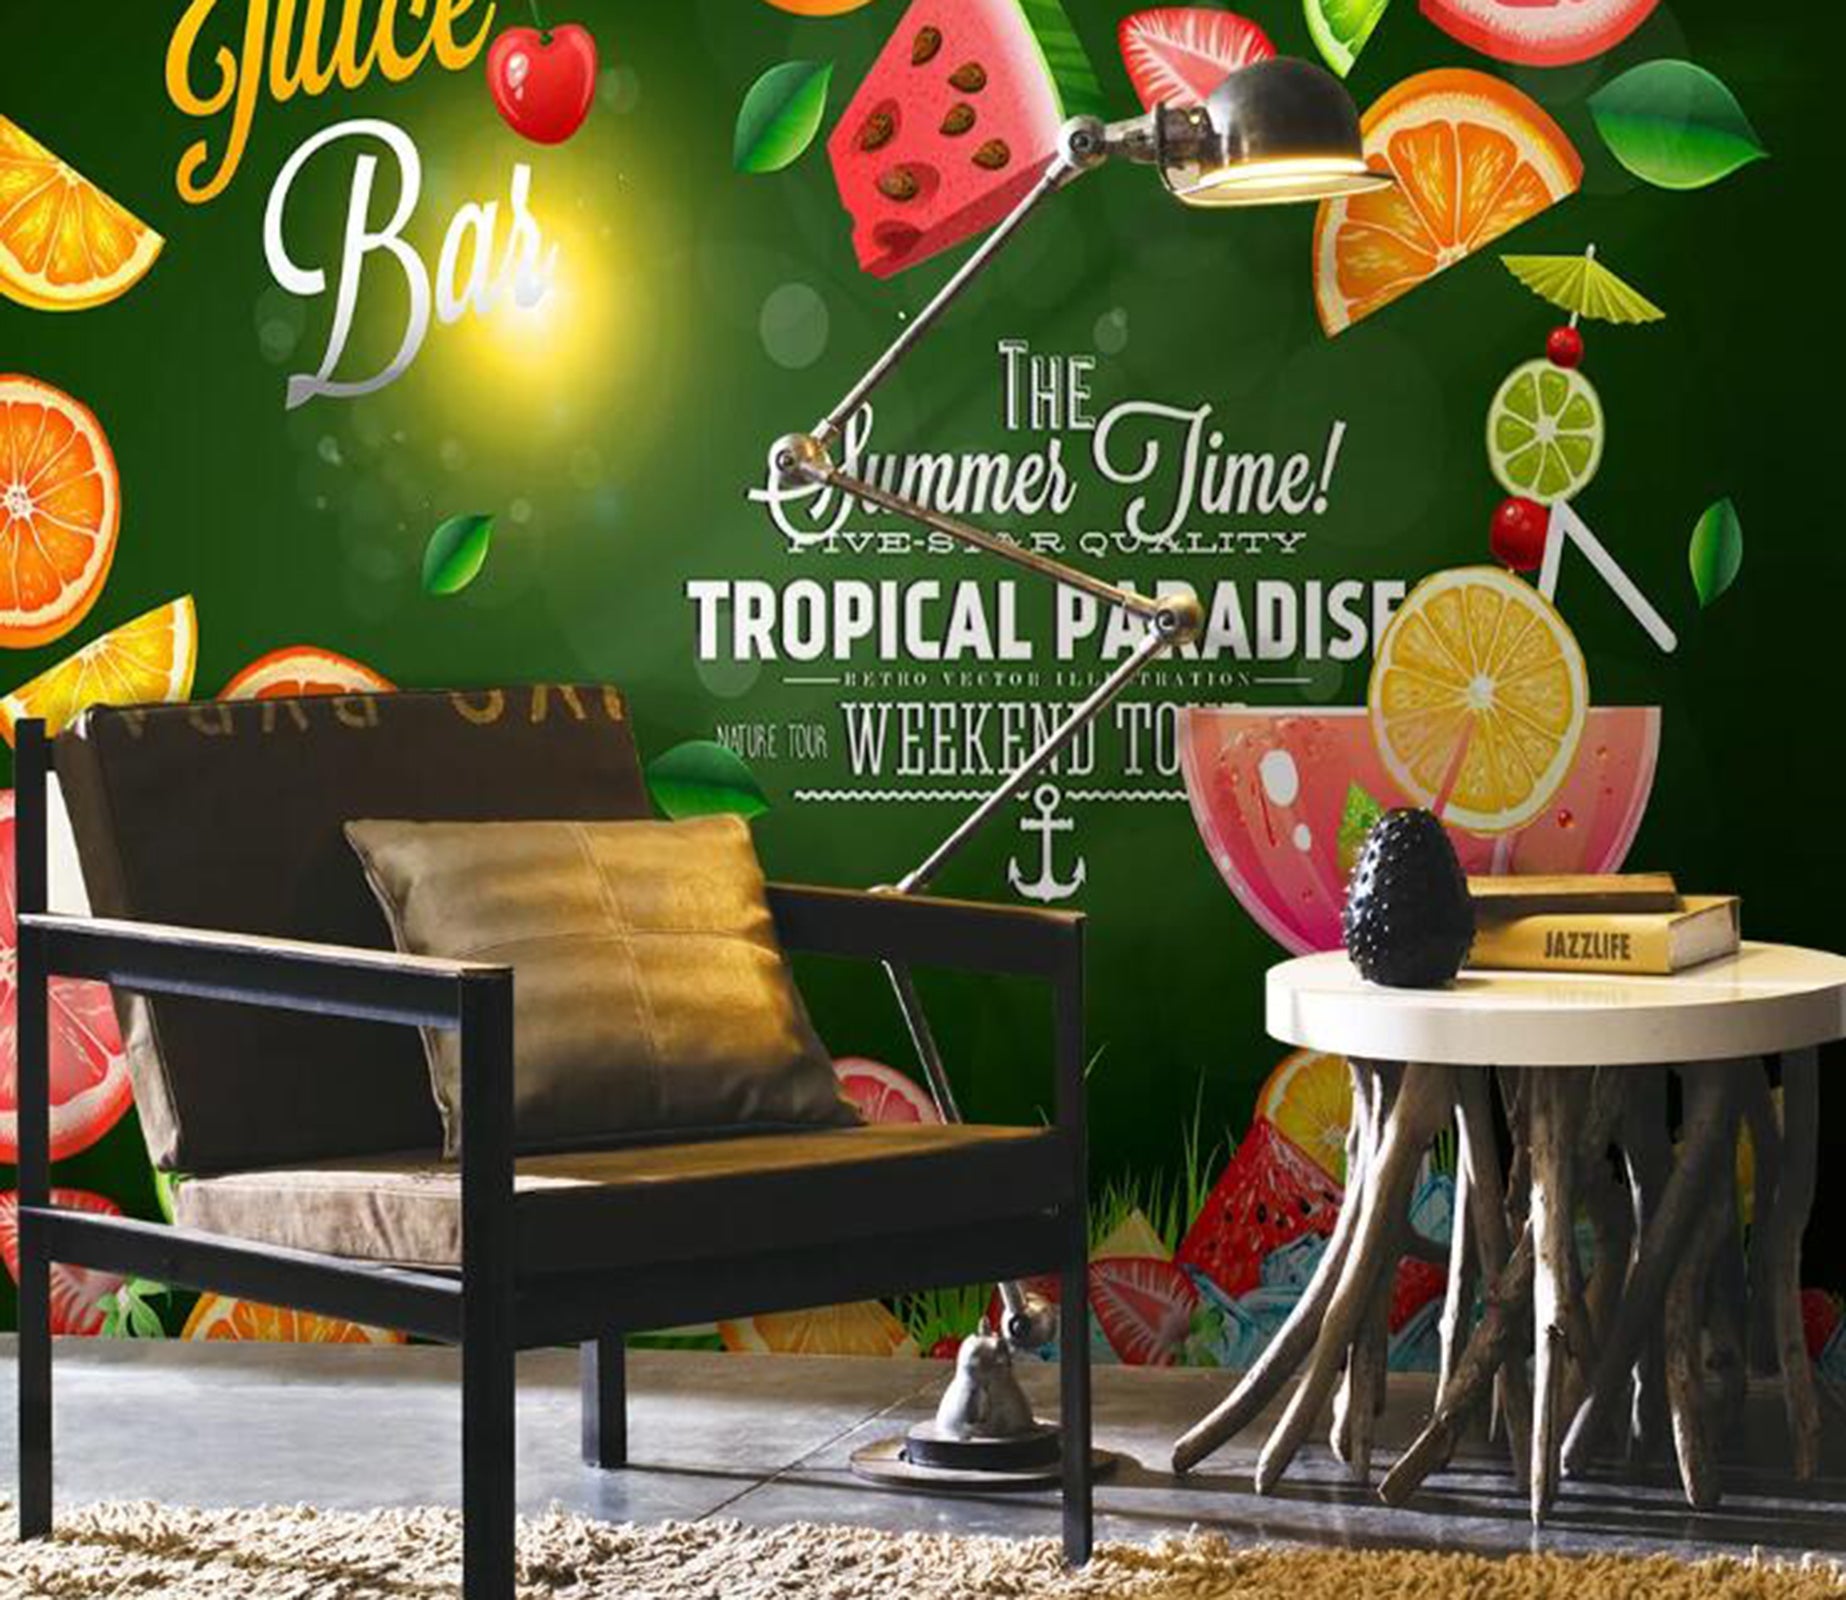 3D Delicious Fruit WC90 Food Wall Murals Wallpaper AJ Wallpaper 2 